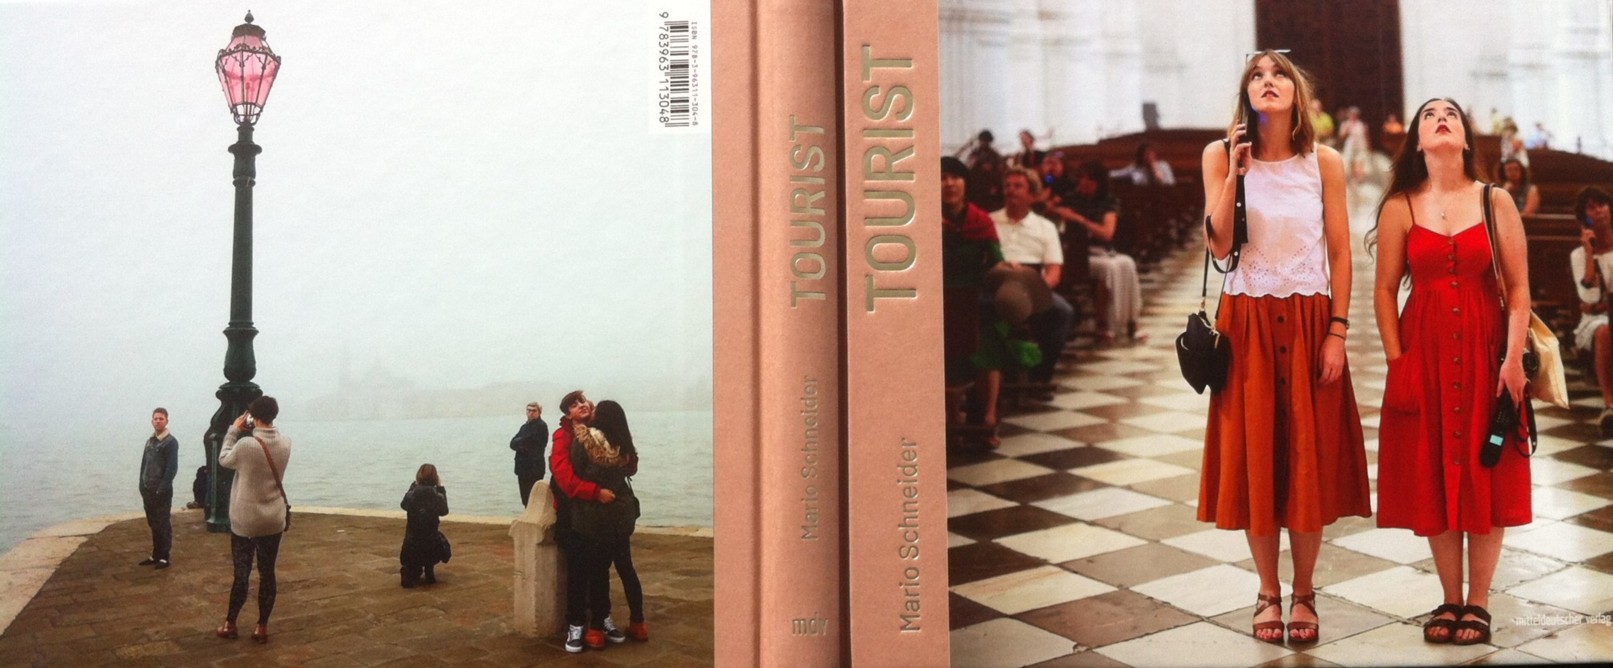 Mario Schneider, Bildband "Tourist", Cover